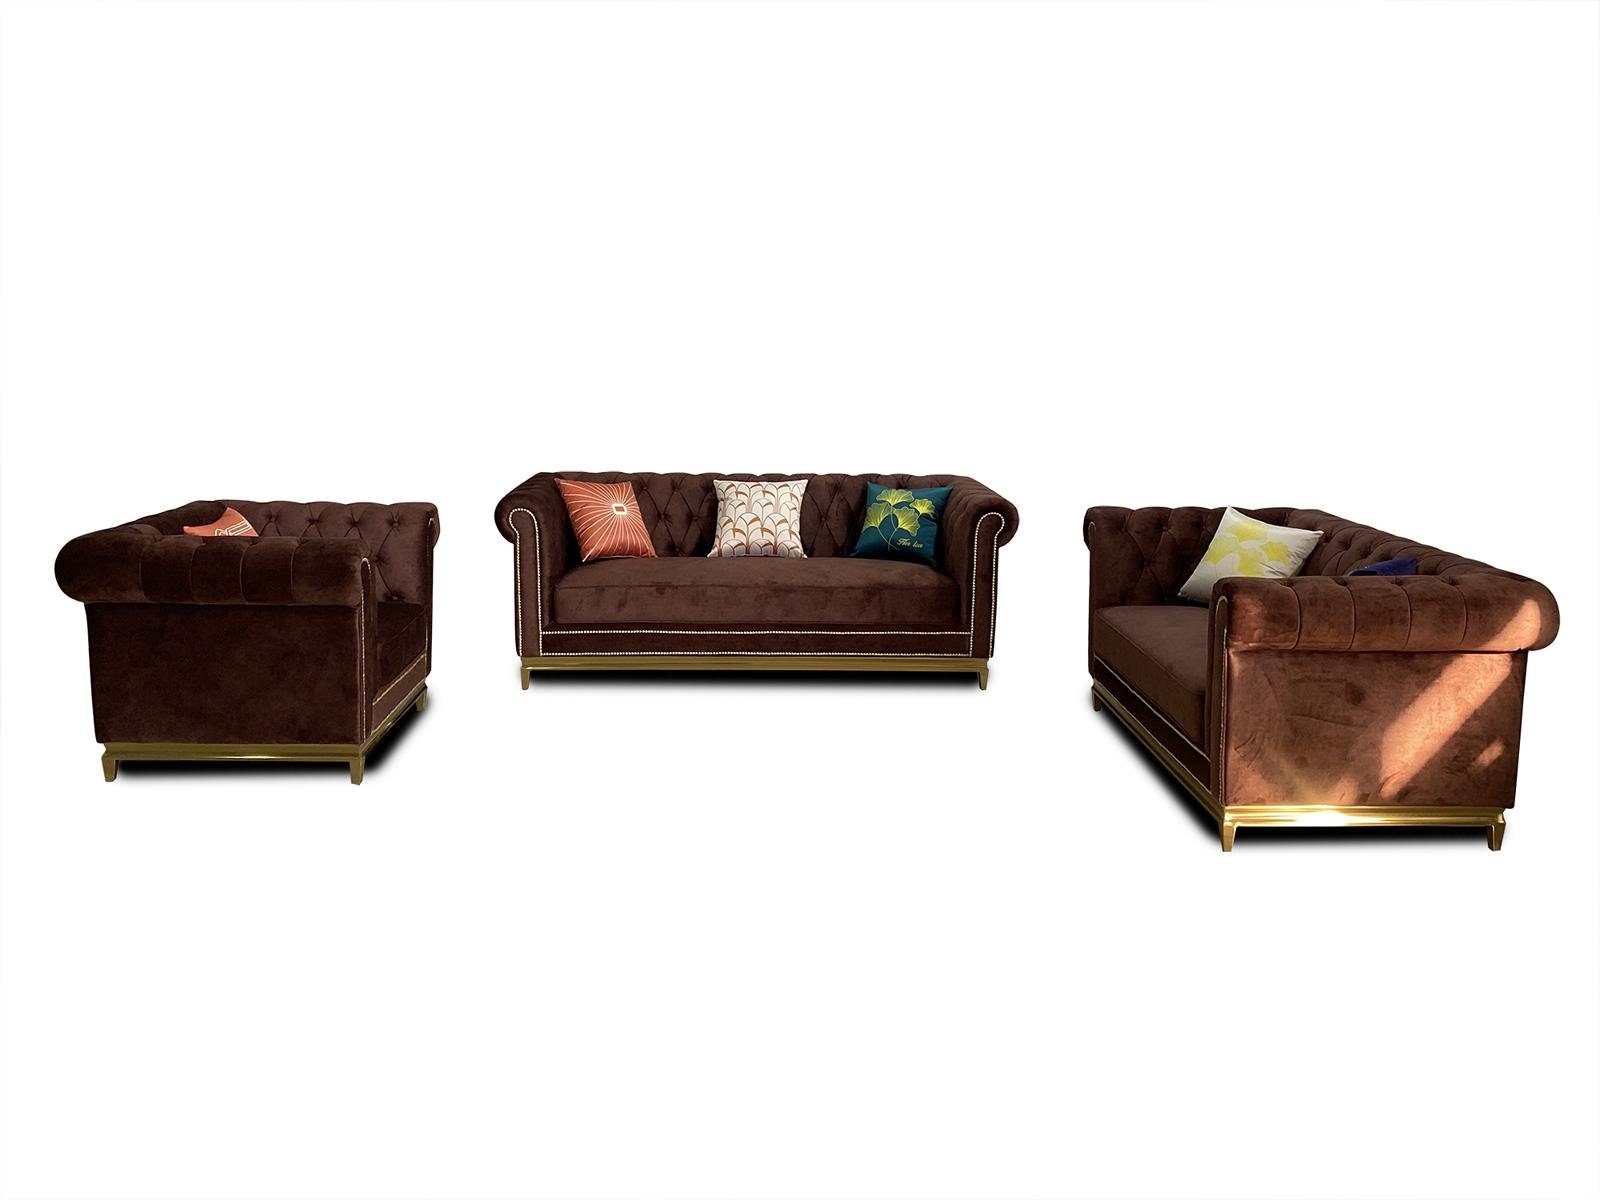 JVmoebel Sofa Luxuriöse Chesterfield Couchgarnitur 3+2+1 Sitzer Braun Neu, Made in Europe